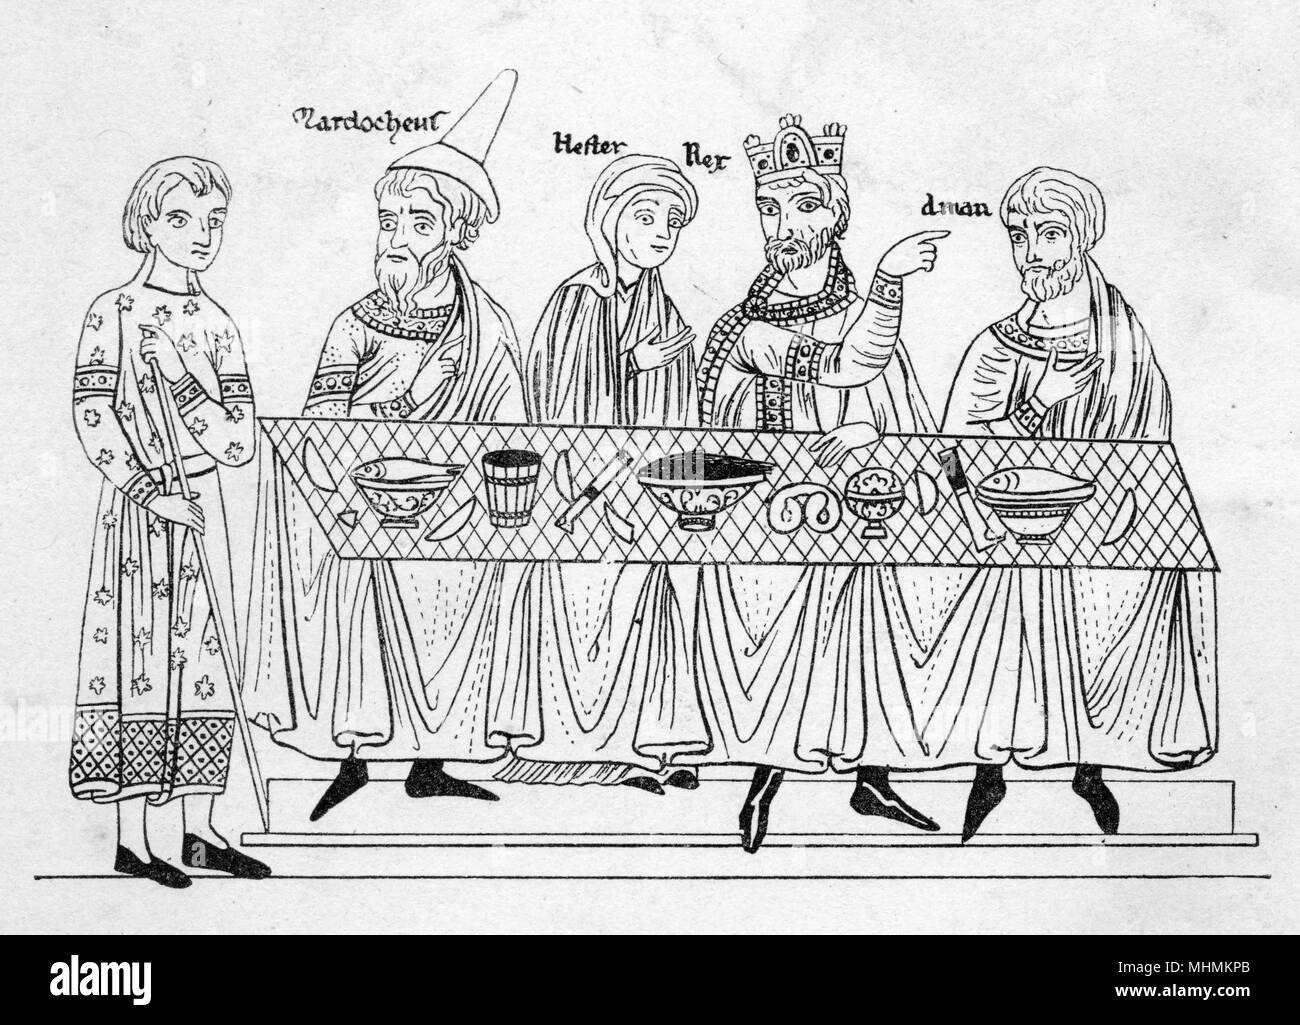 Une représentation stylisée d'un banquet médiéval. Date : cité médiévale Banque D'Images